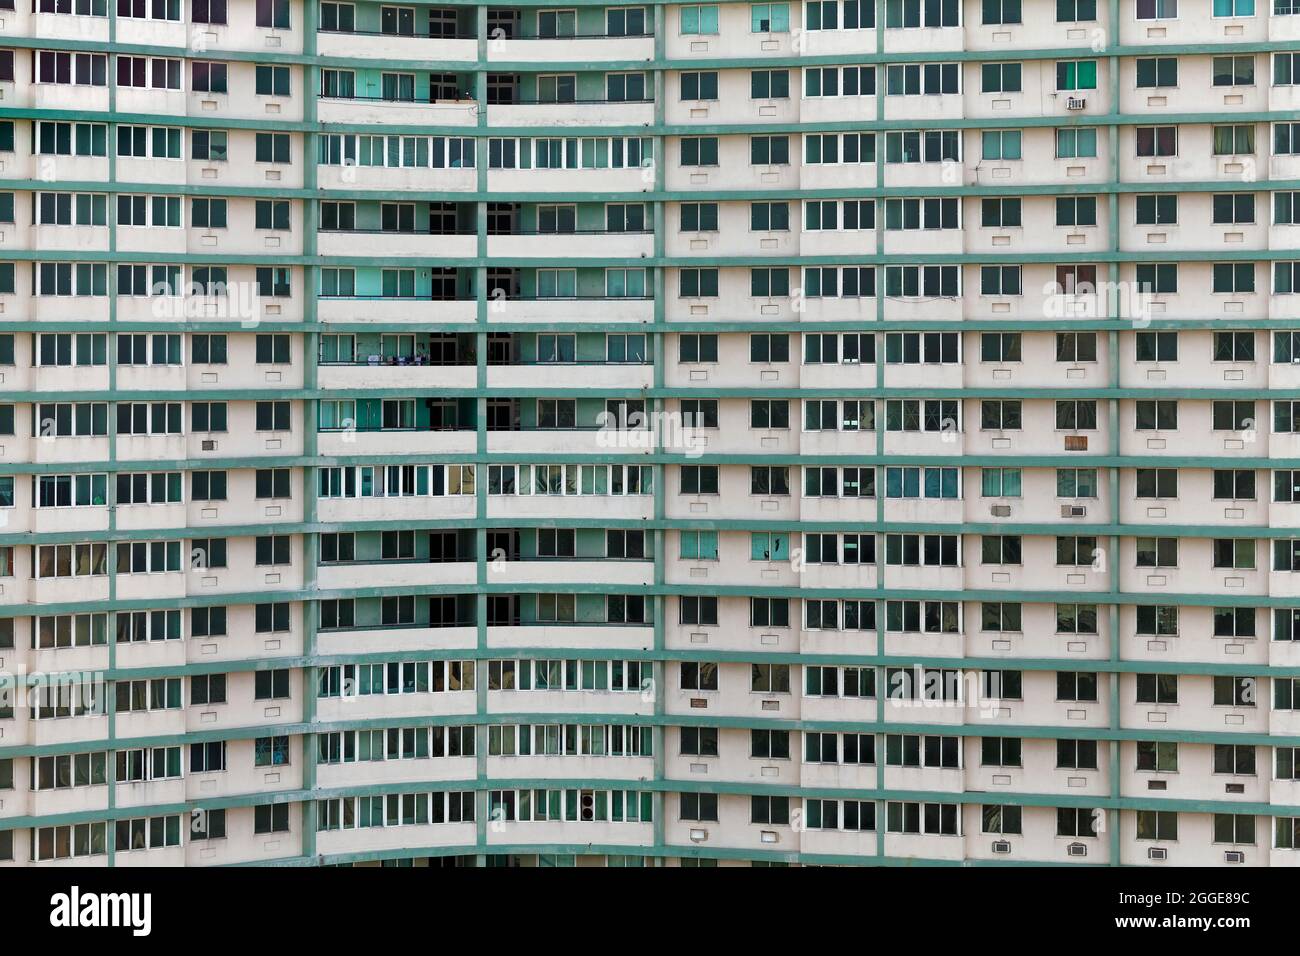 Immeuble d'appartements, tour, immeuble préfabriqué, capitale la Havane, province de la Havane, Grandes Antilles, Caraïbes, Cuba Banque D'Images